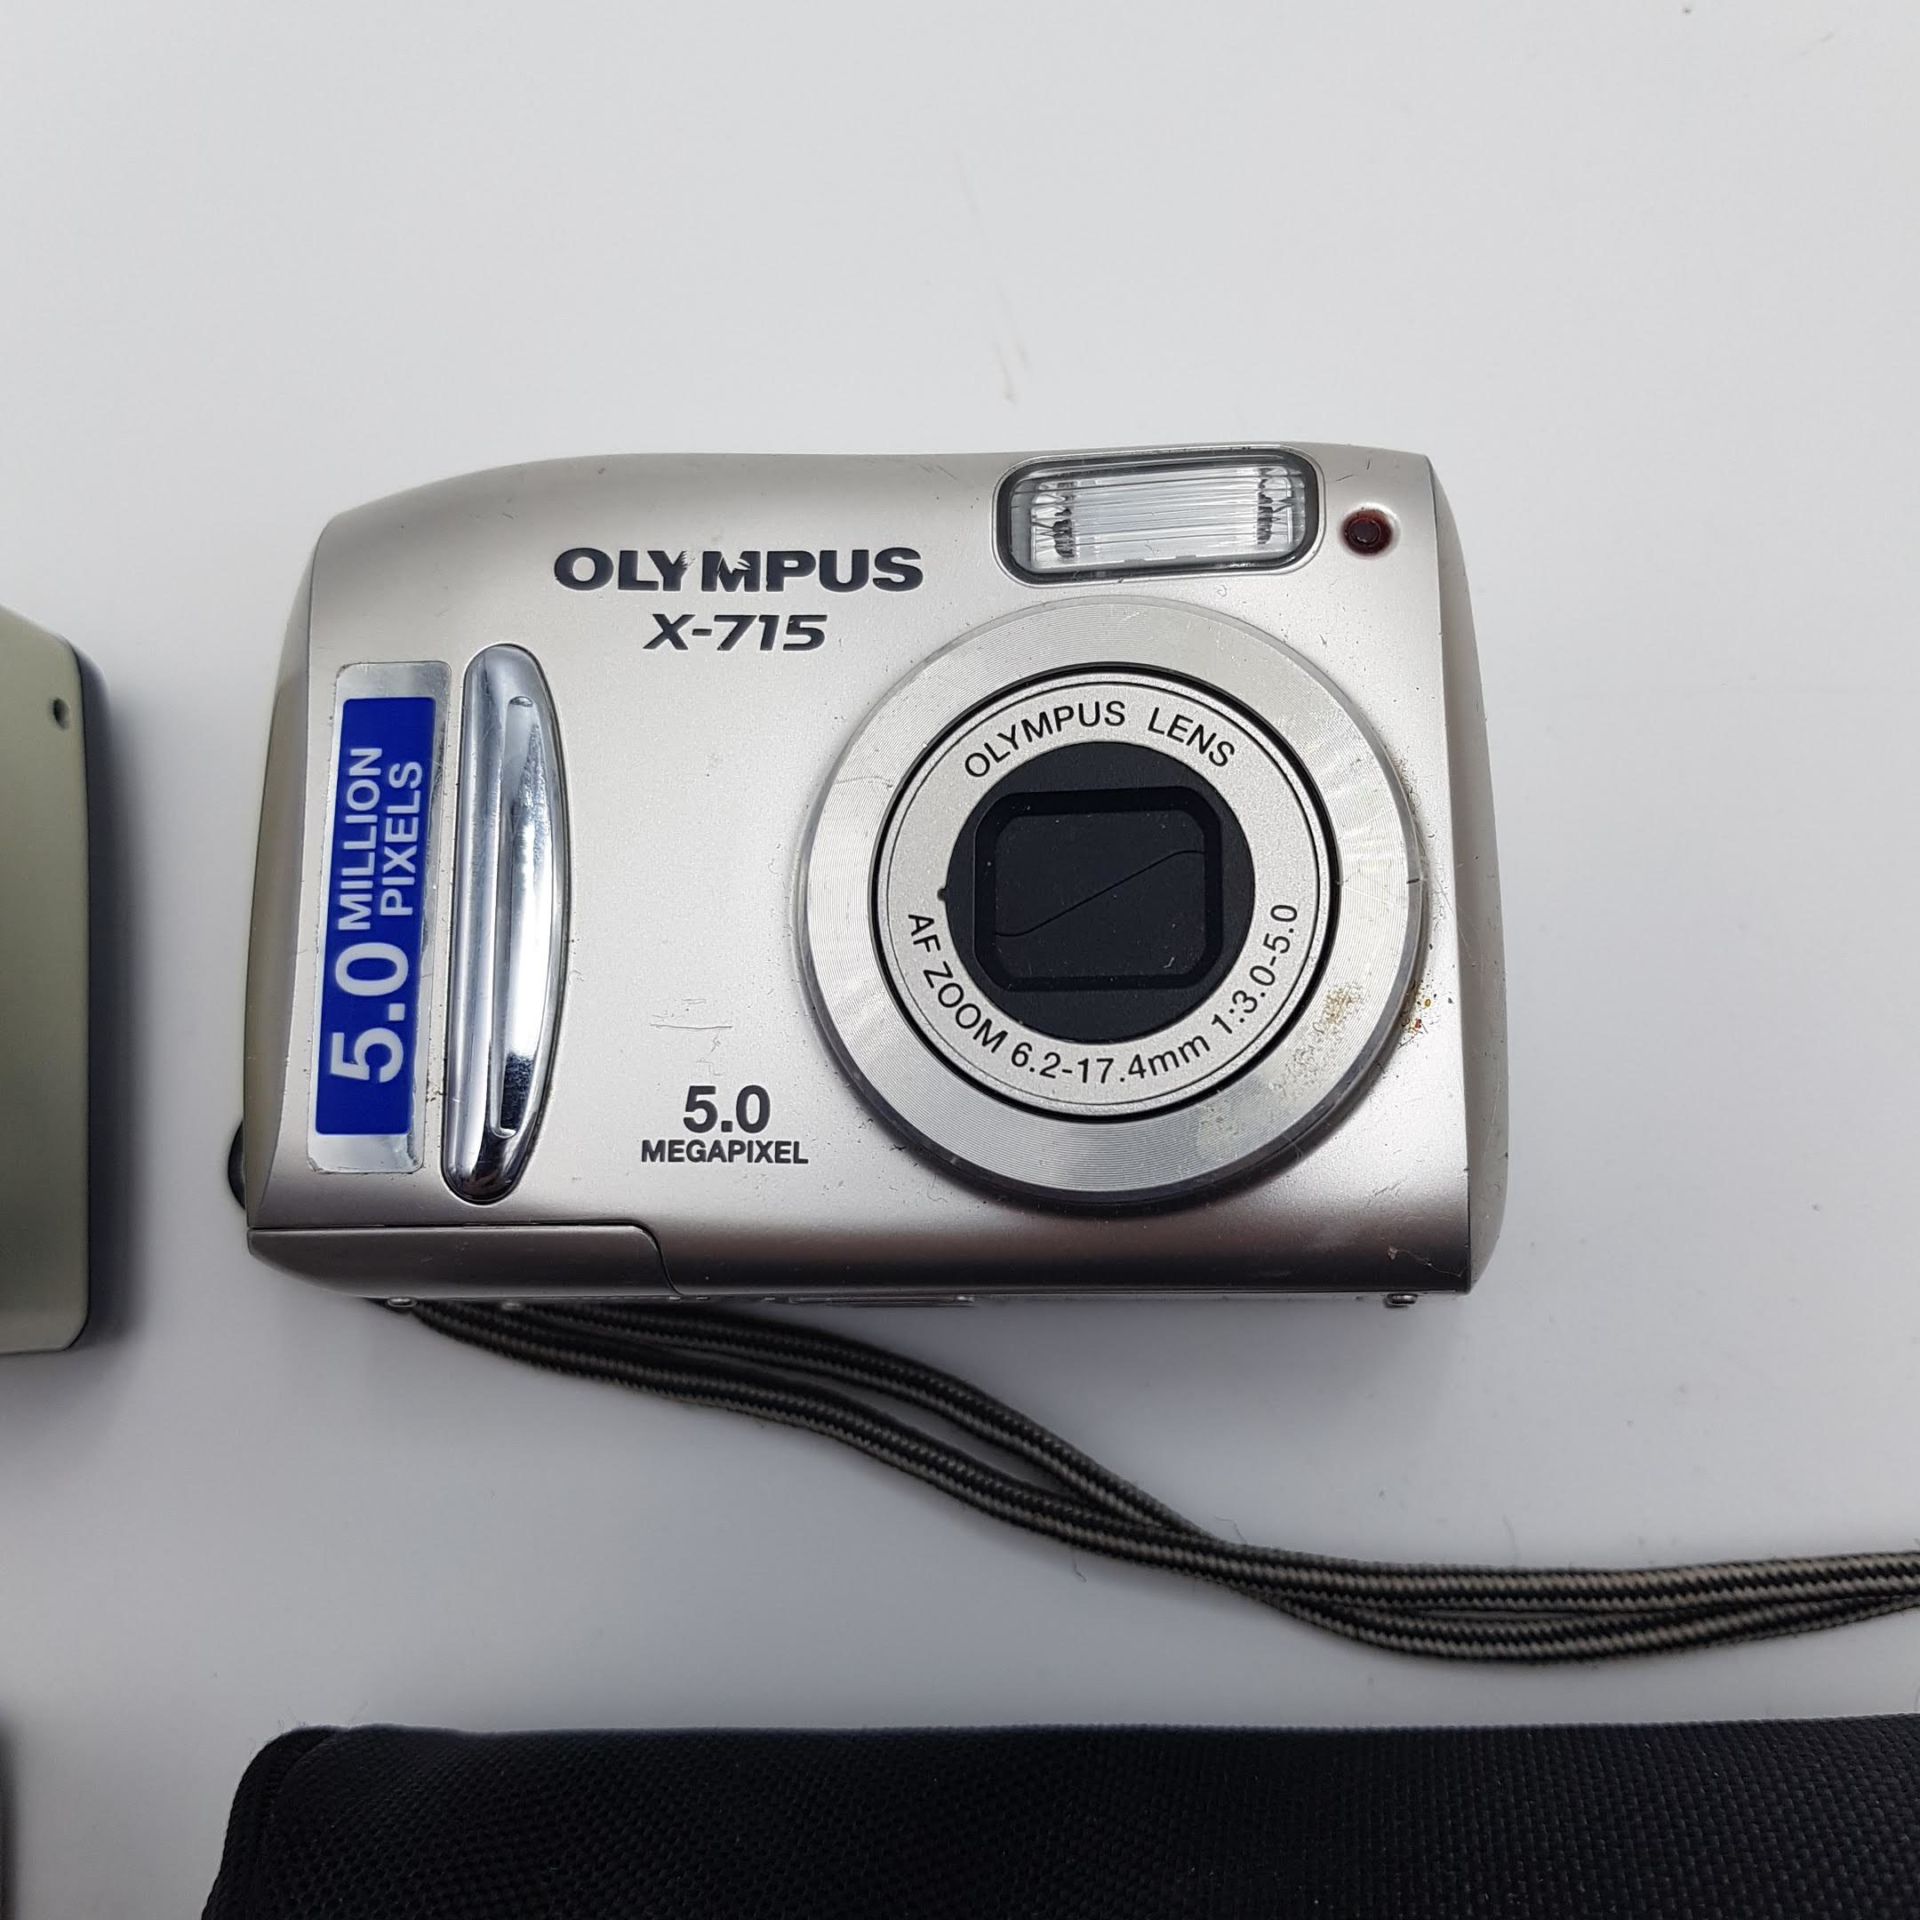 35mm digital camera